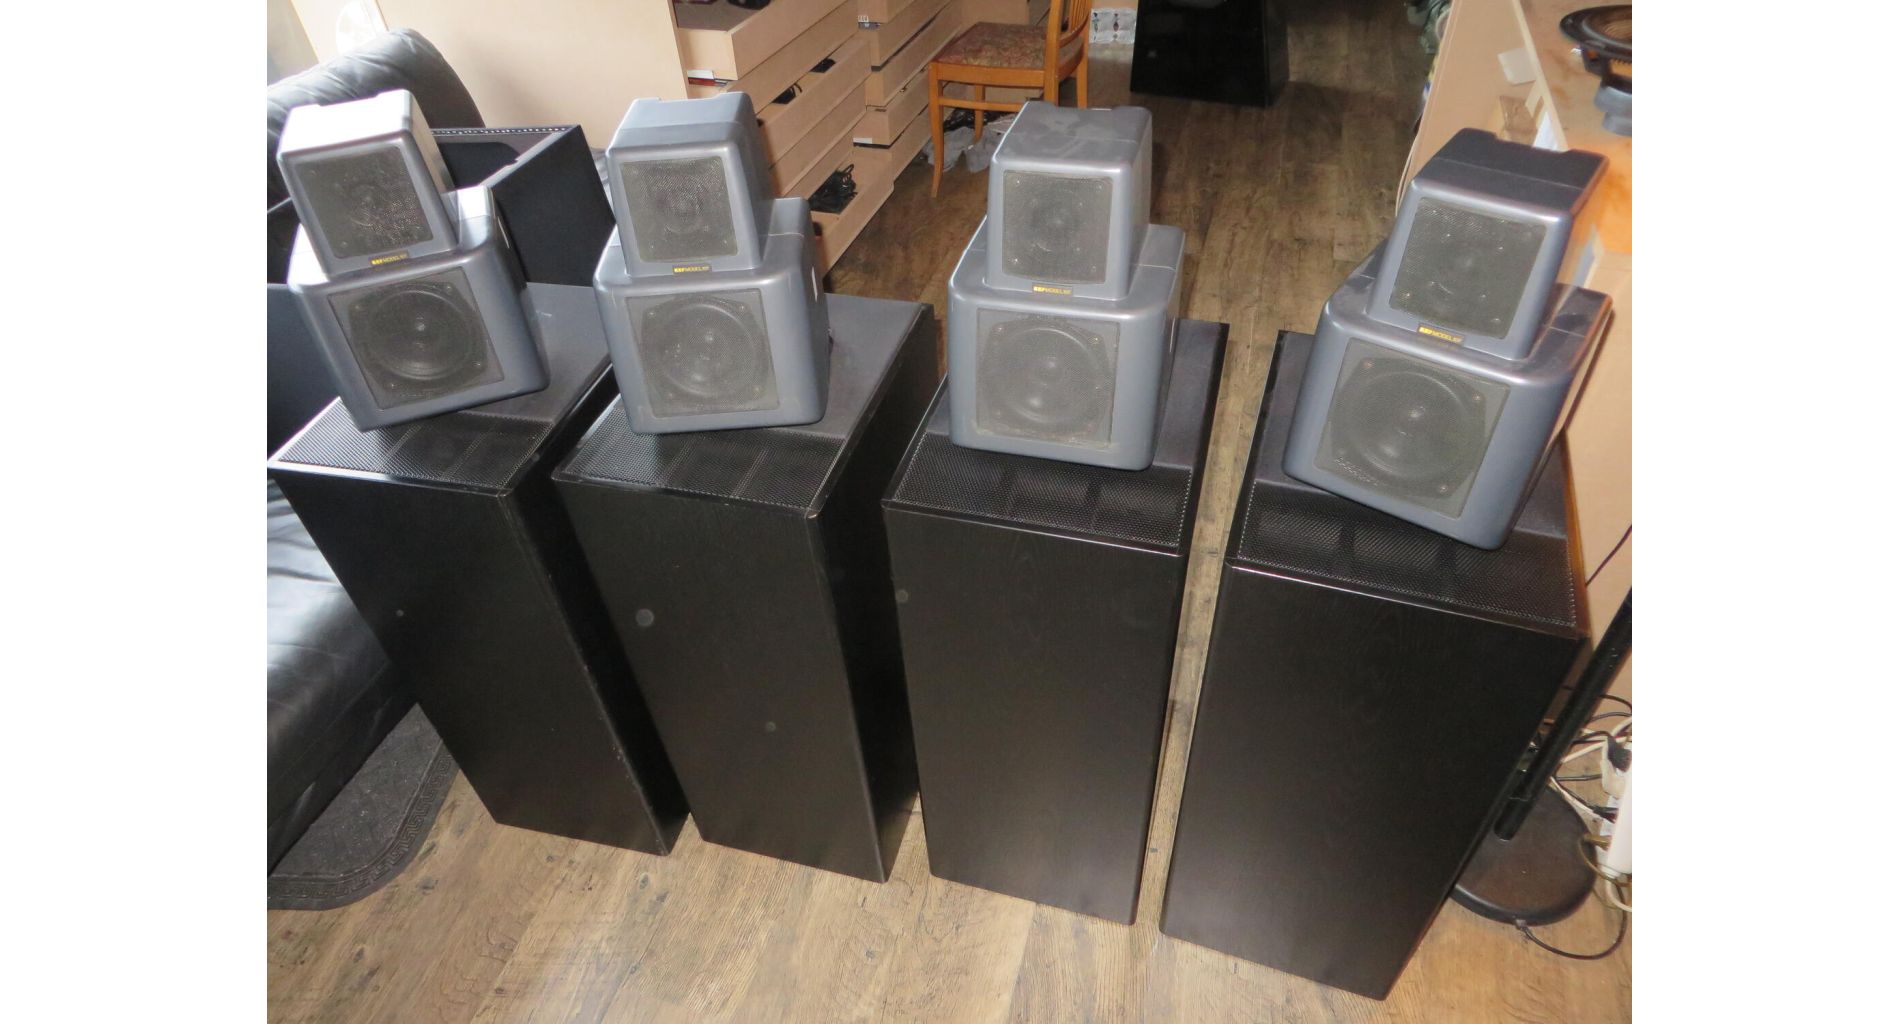 KEF 107 speakers